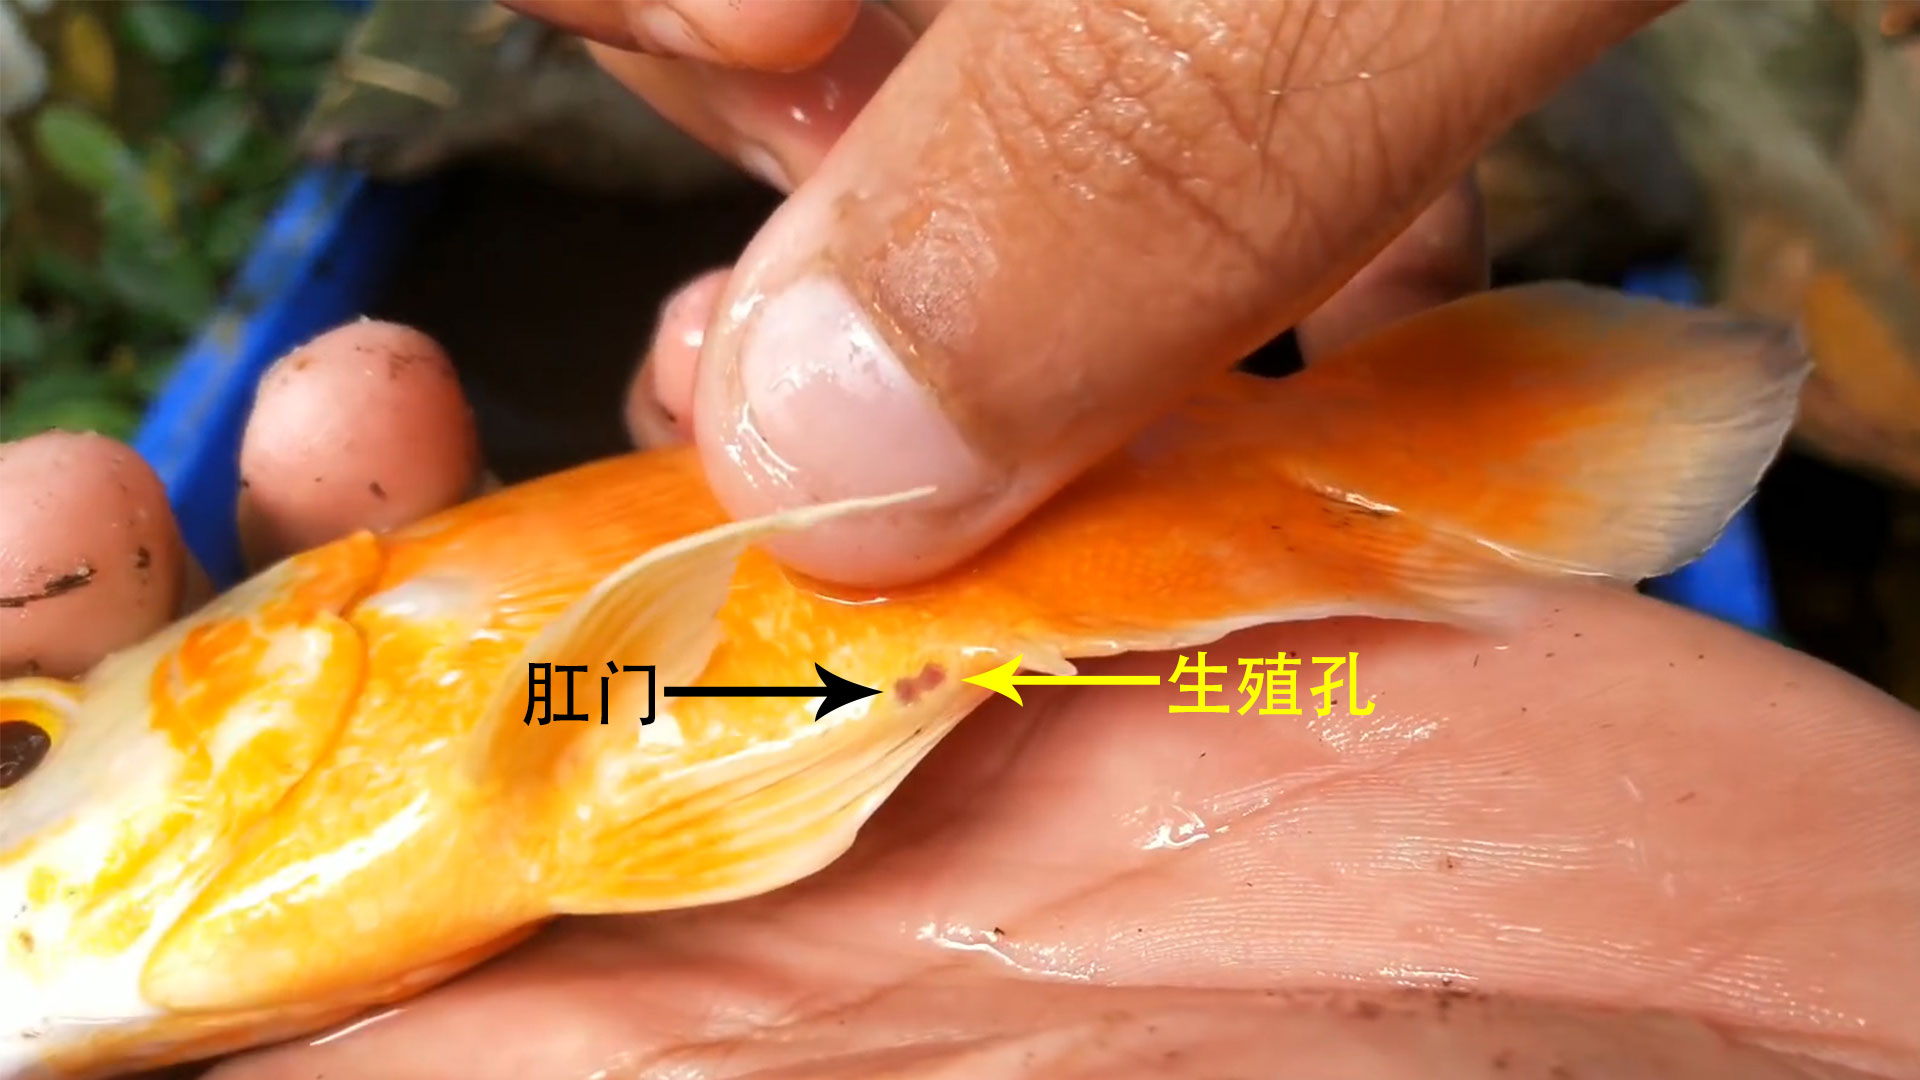 如何判断金鱼的公母图片